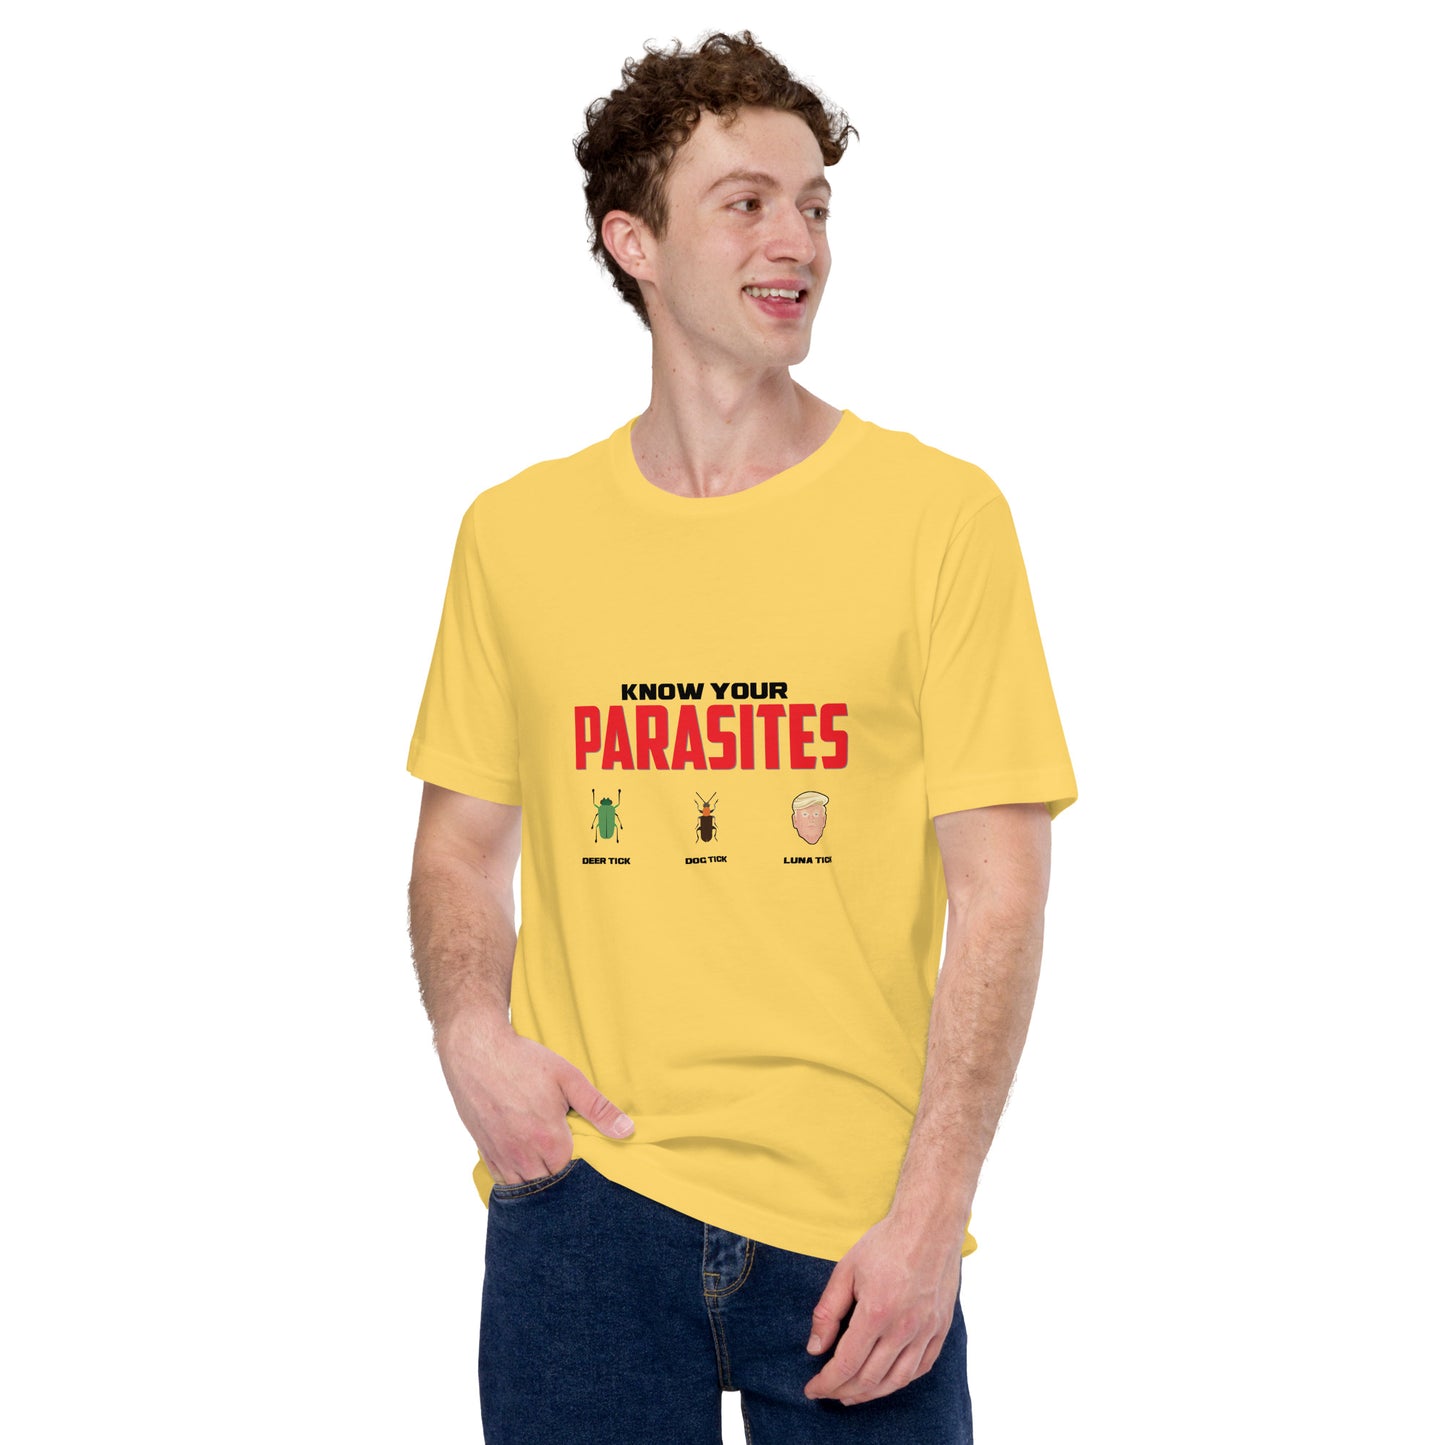 Parasites t-shirt